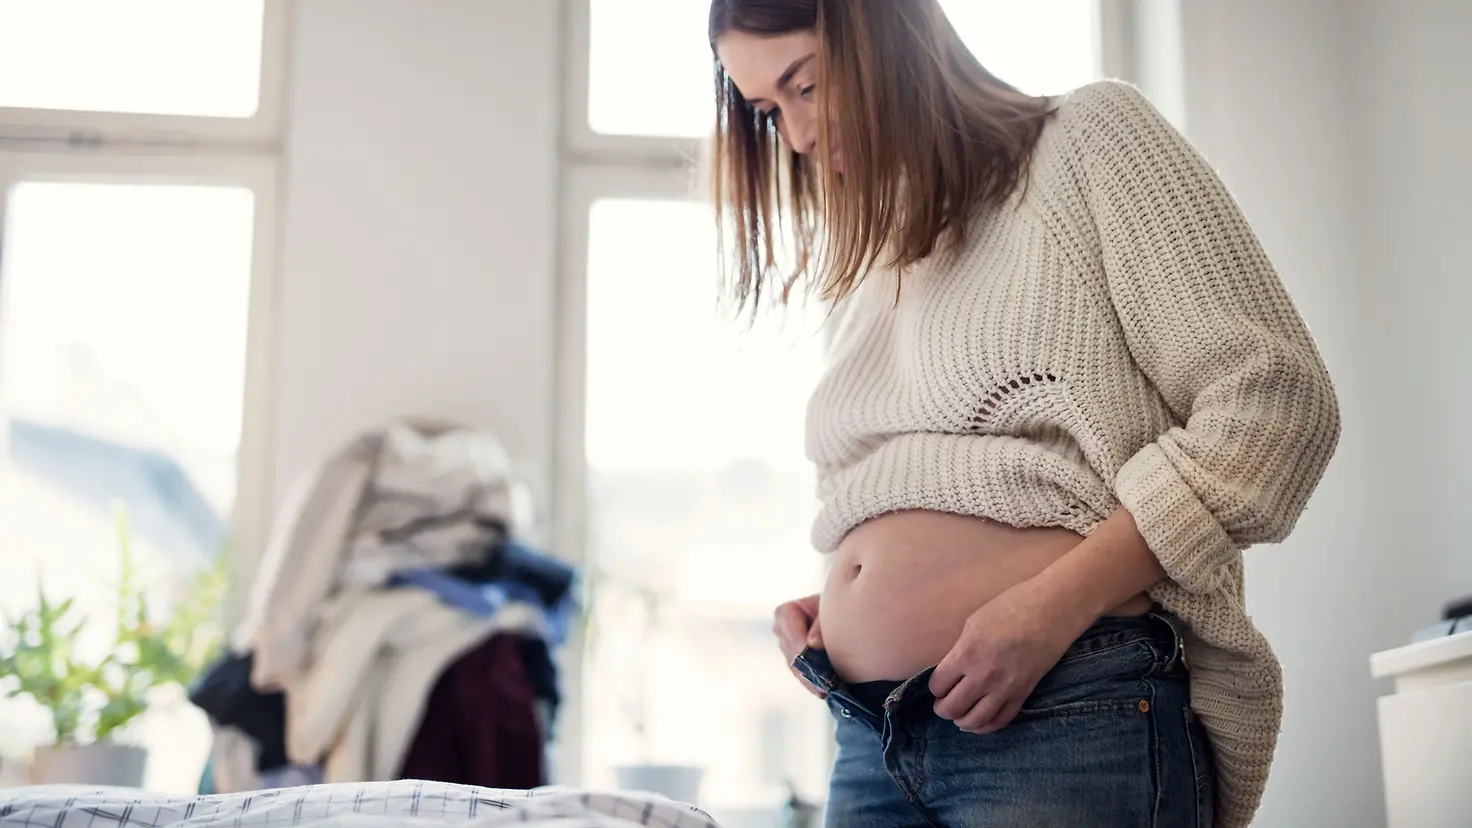 Frau mit Babybauch in der etwa 21. Schwangerschaftswoche versucht Hose zu schließen